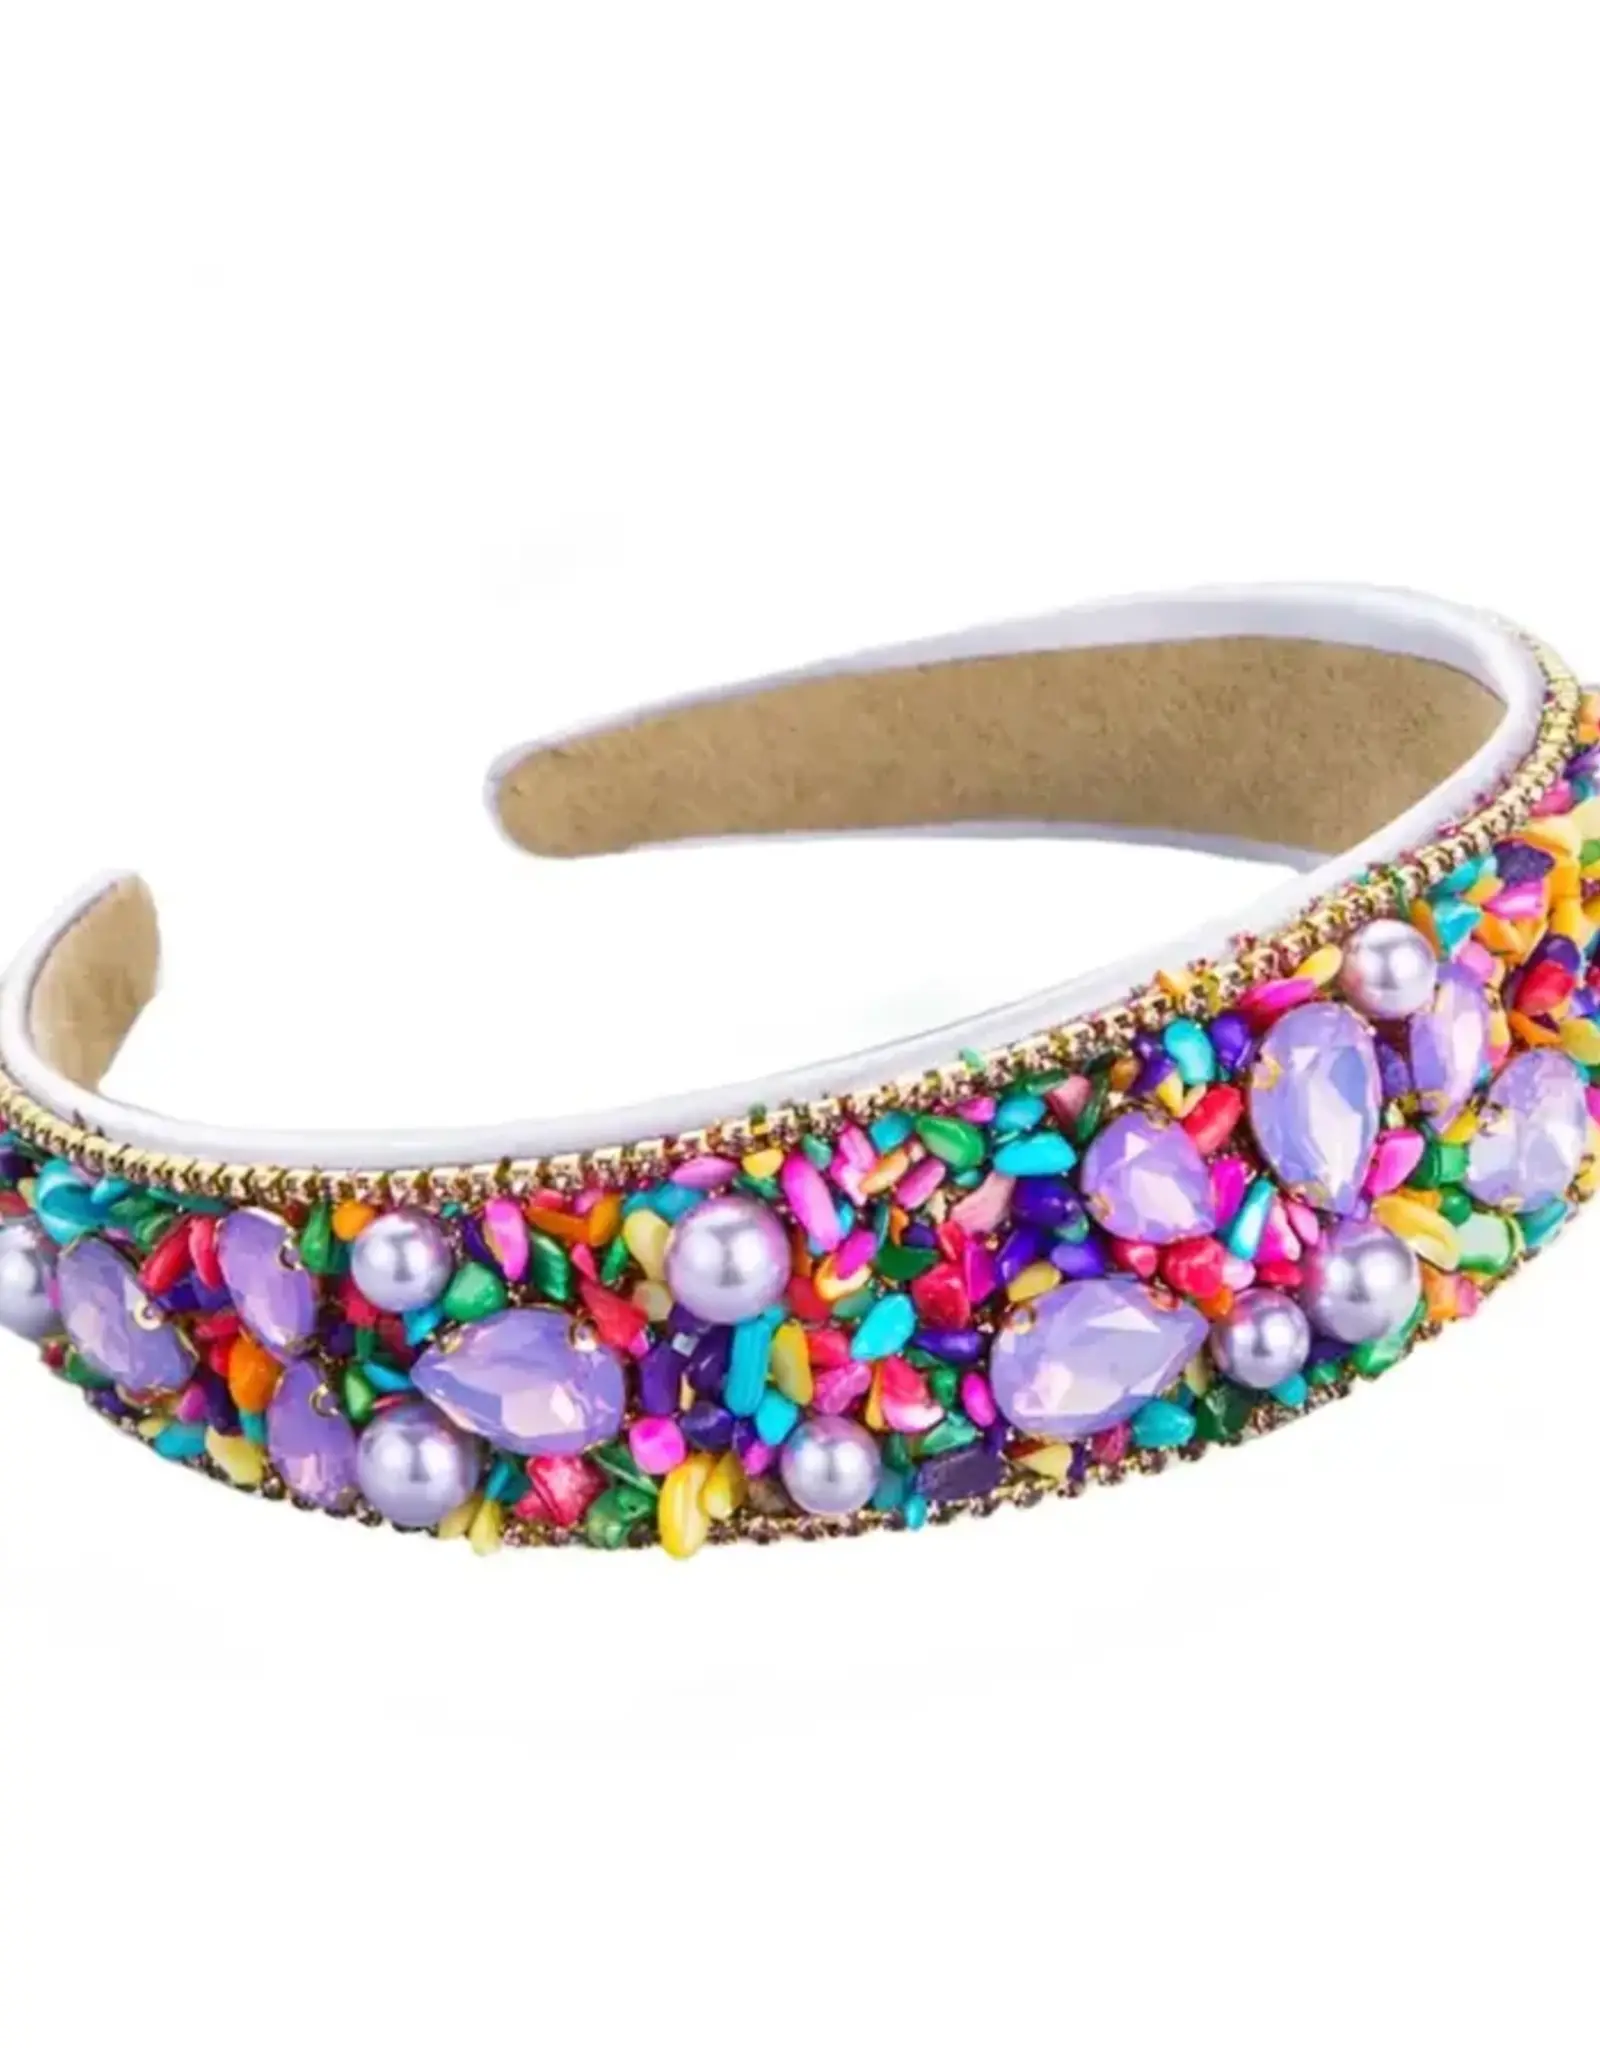 Confetti Couture Headband